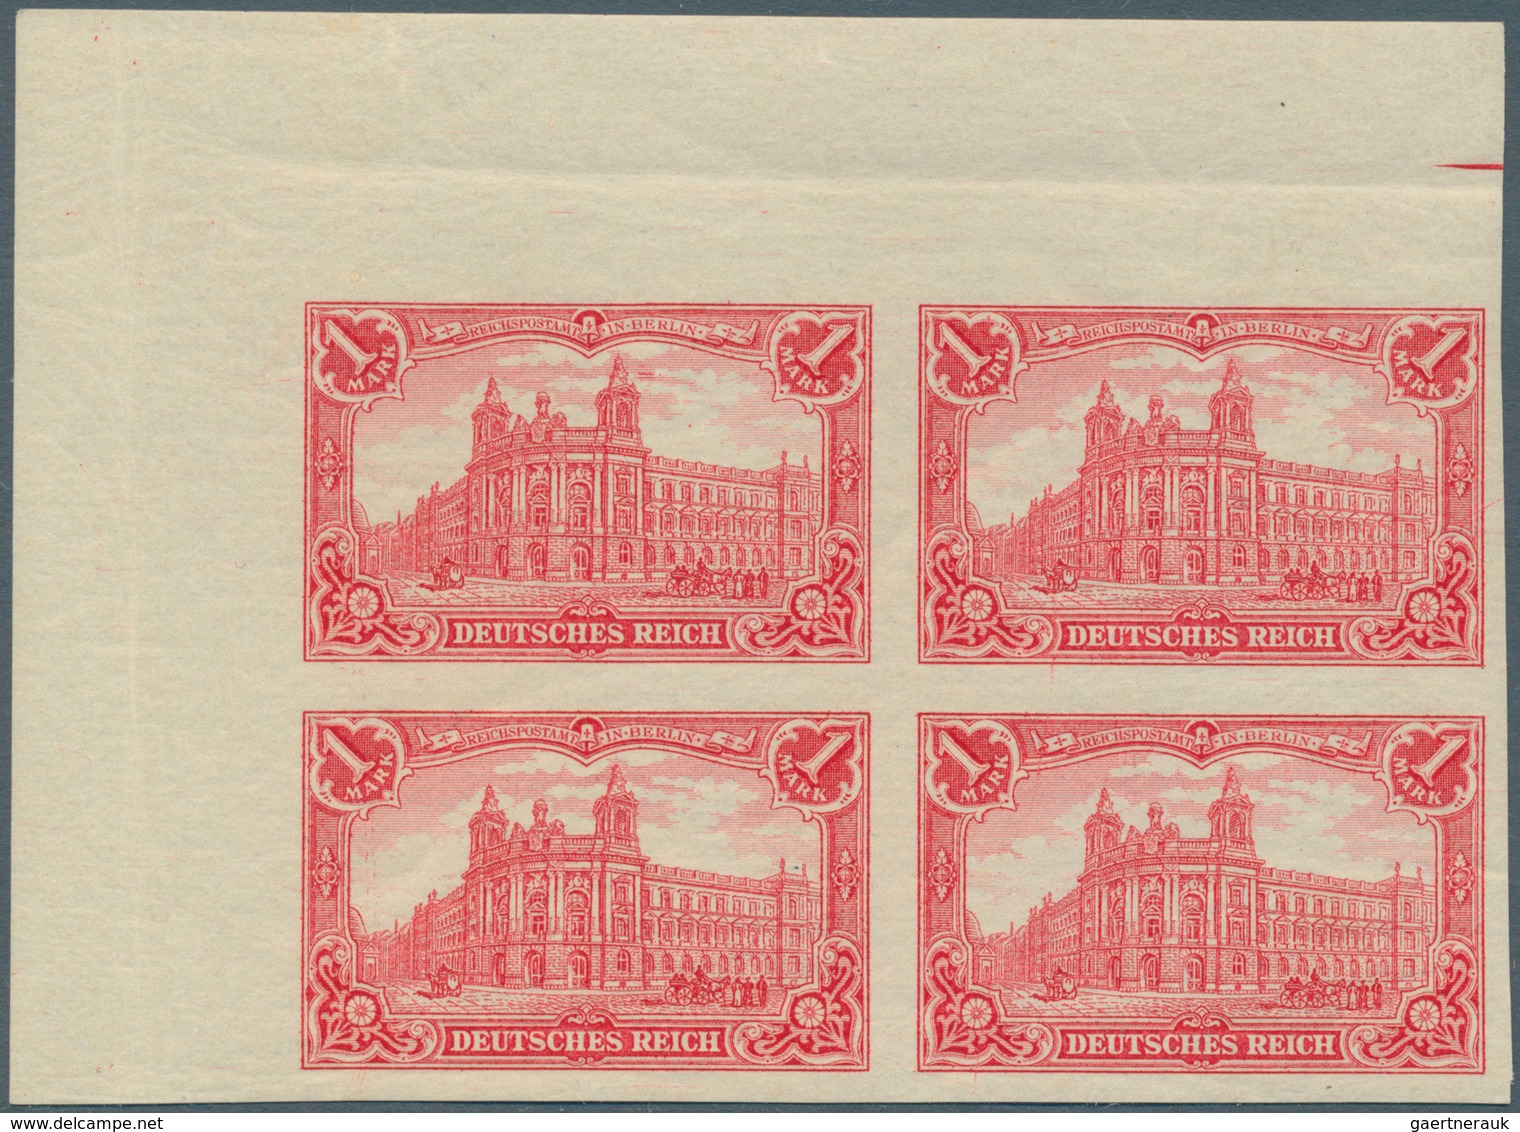 01267 Deutsches Reich - Germania: 1902, Germania 1-5 Mark, dabei die 2 Mark mit lateinischer Inschrift, al